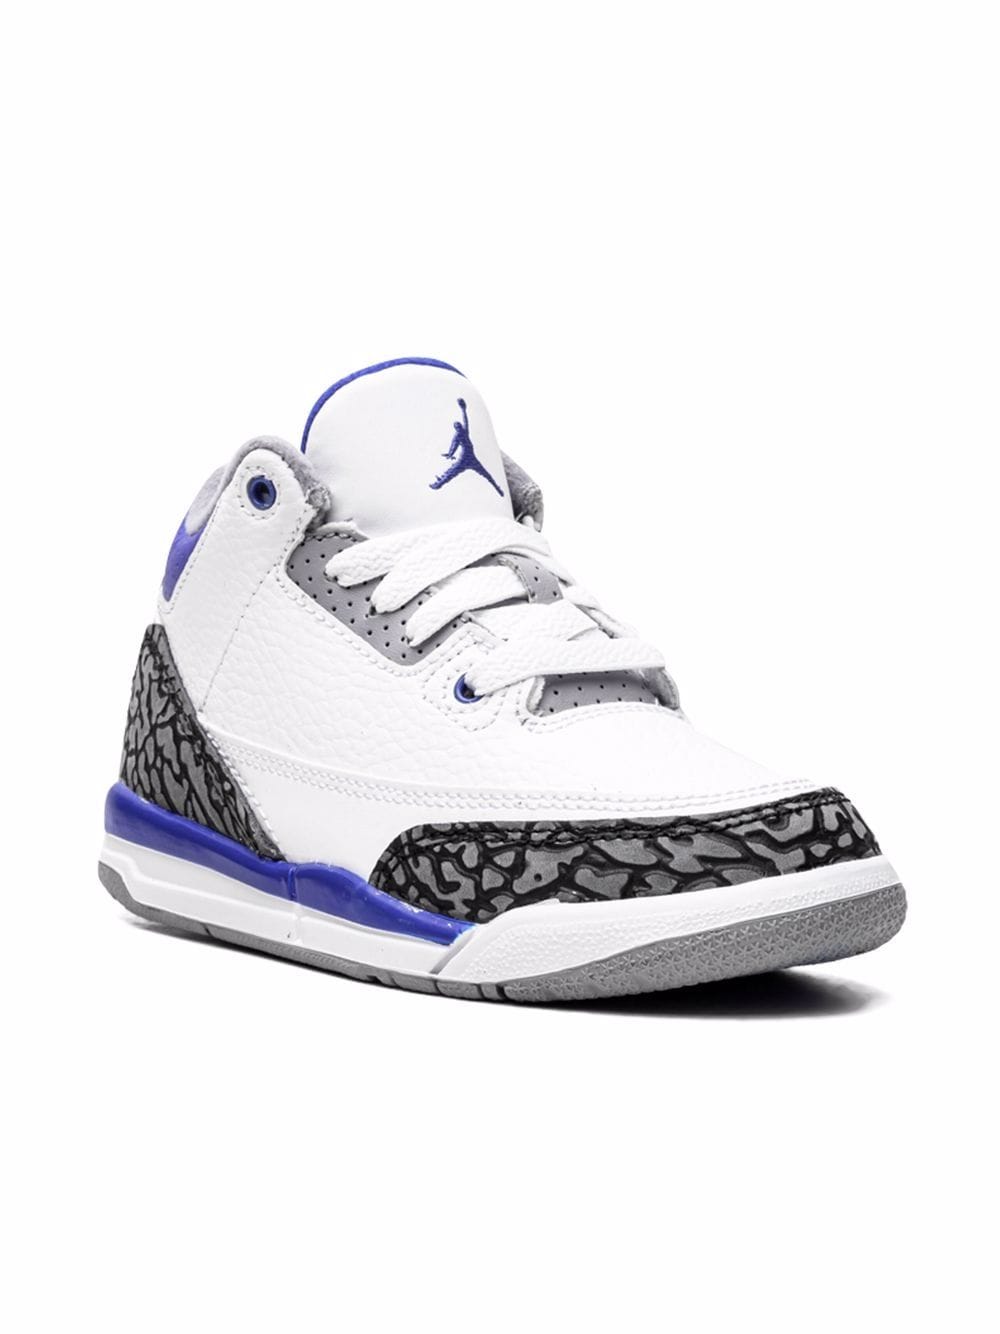 Nike Men's Air Jordan 3 Retro Racer Blue, White/Black